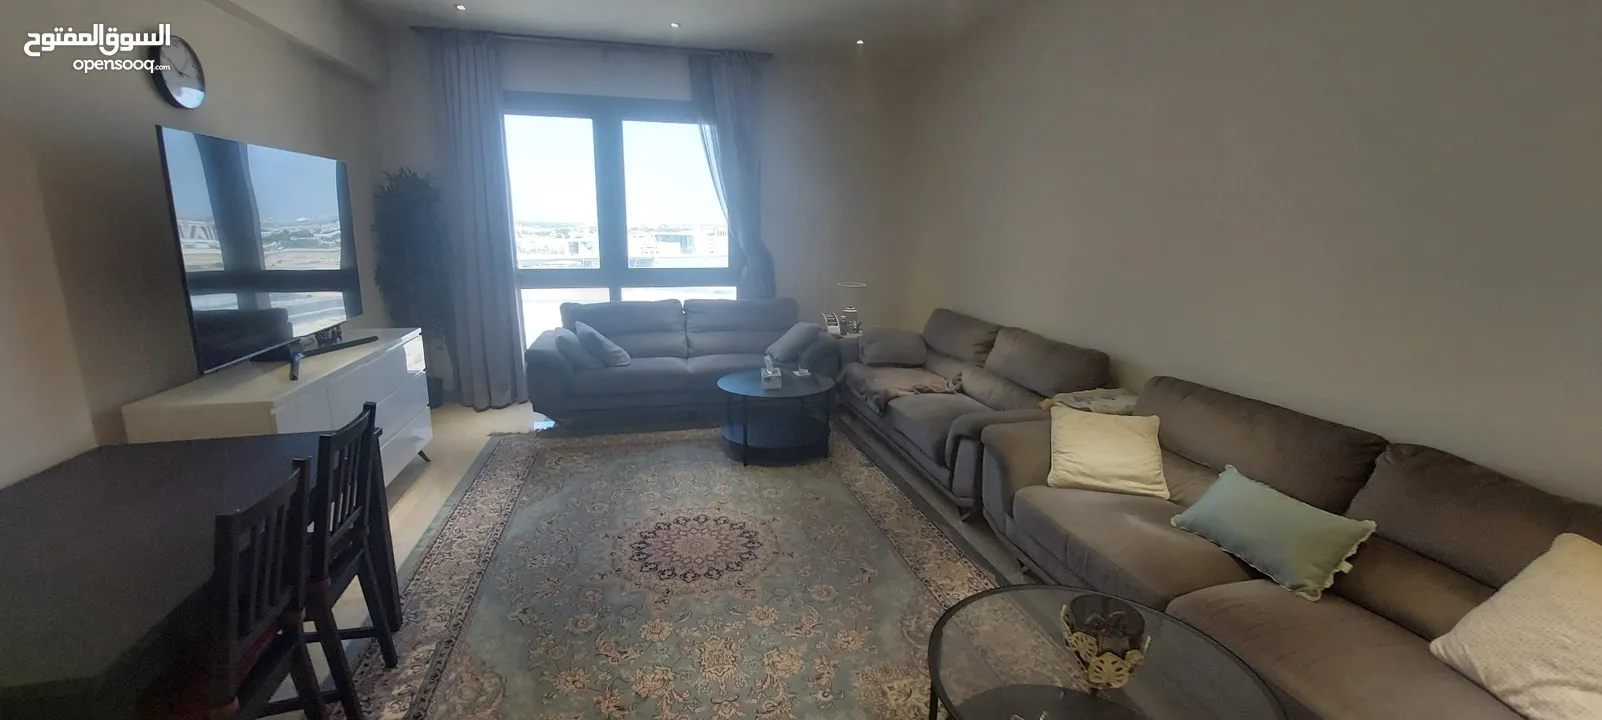 شقة للايجار في مسقط هيلز_An apartment for rent in Muscat Hills